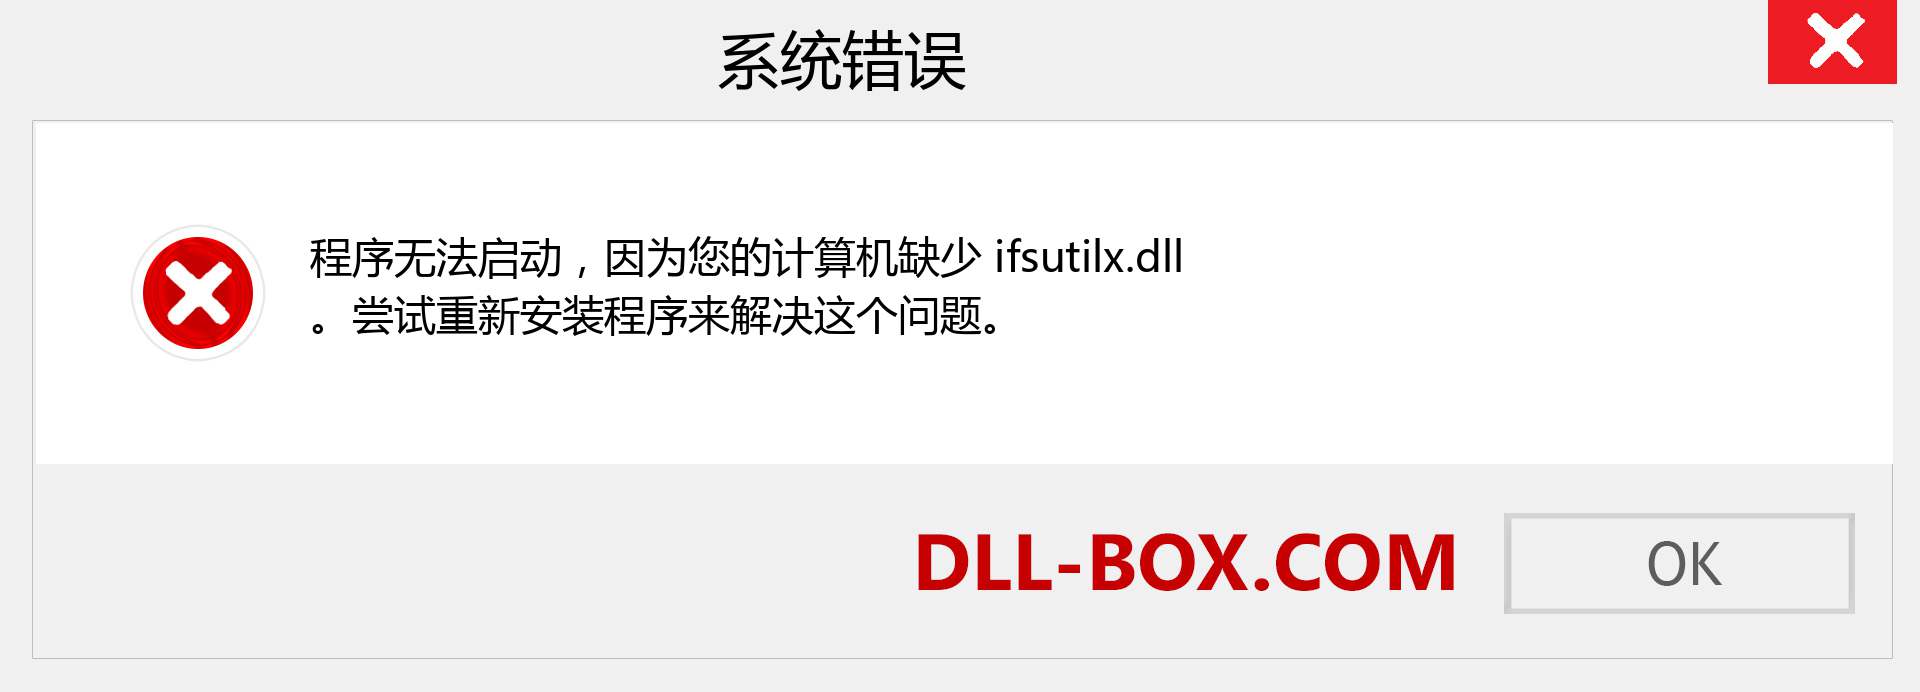 ifsutilx.dll 文件丢失？。 适用于 Windows 7、8、10 的下载 - 修复 Windows、照片、图像上的 ifsutilx dll 丢失错误